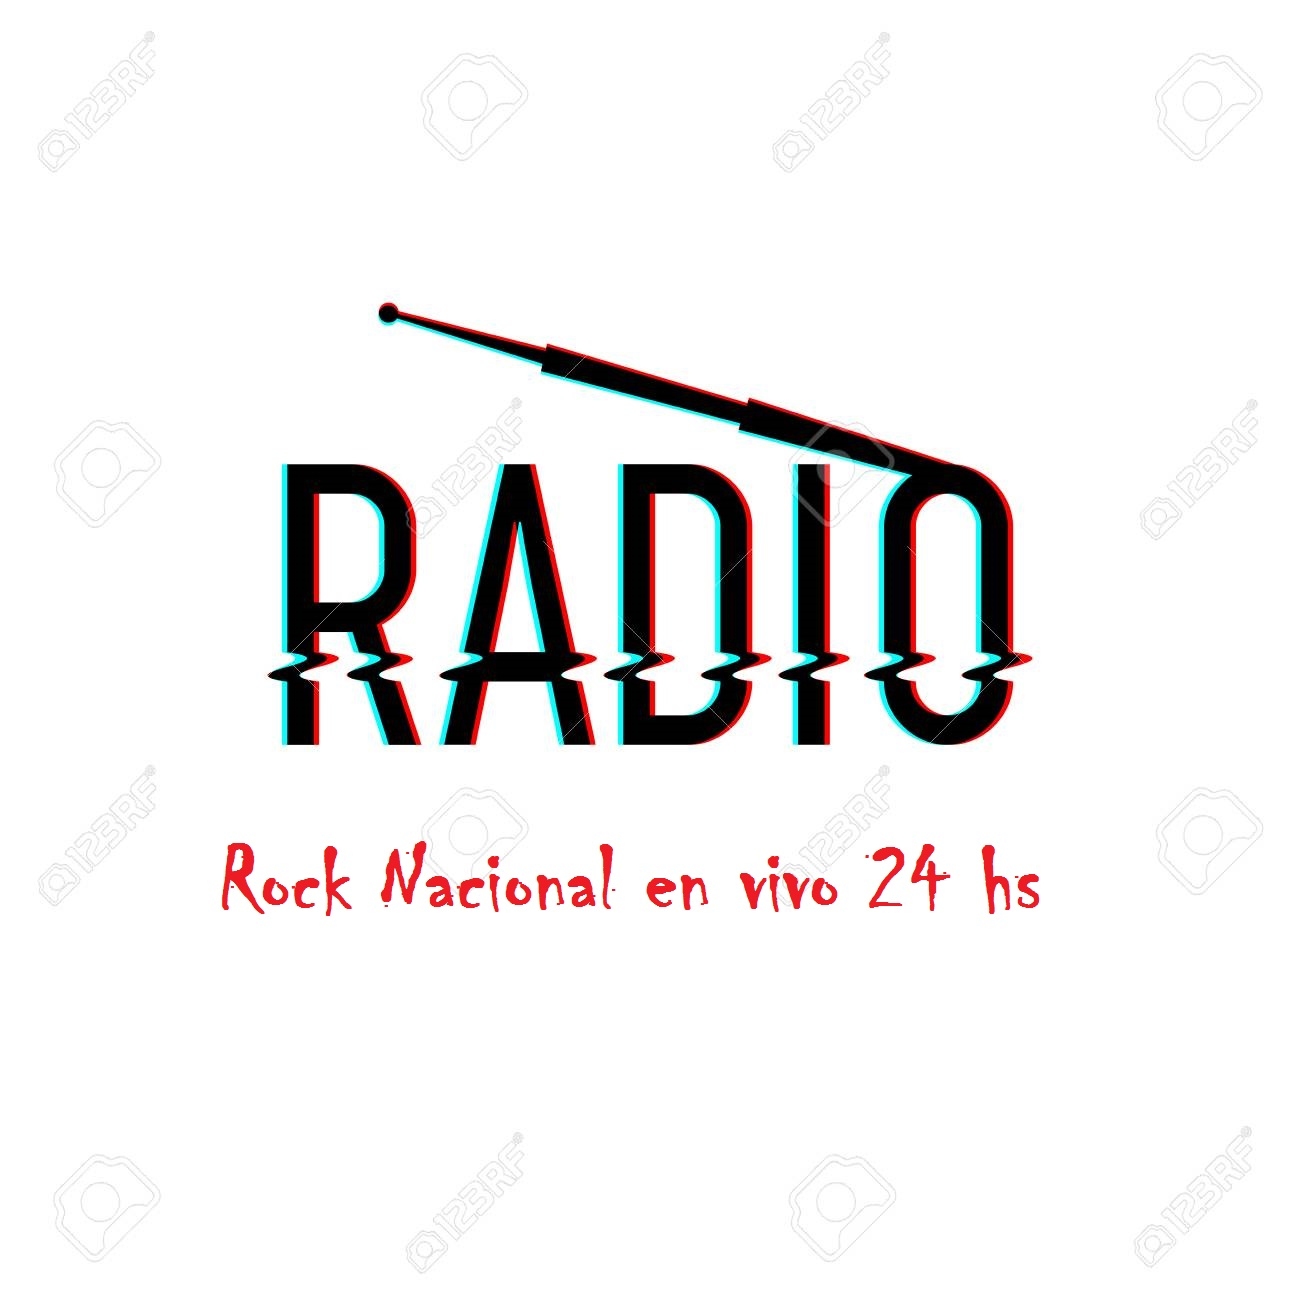 Radio Parana